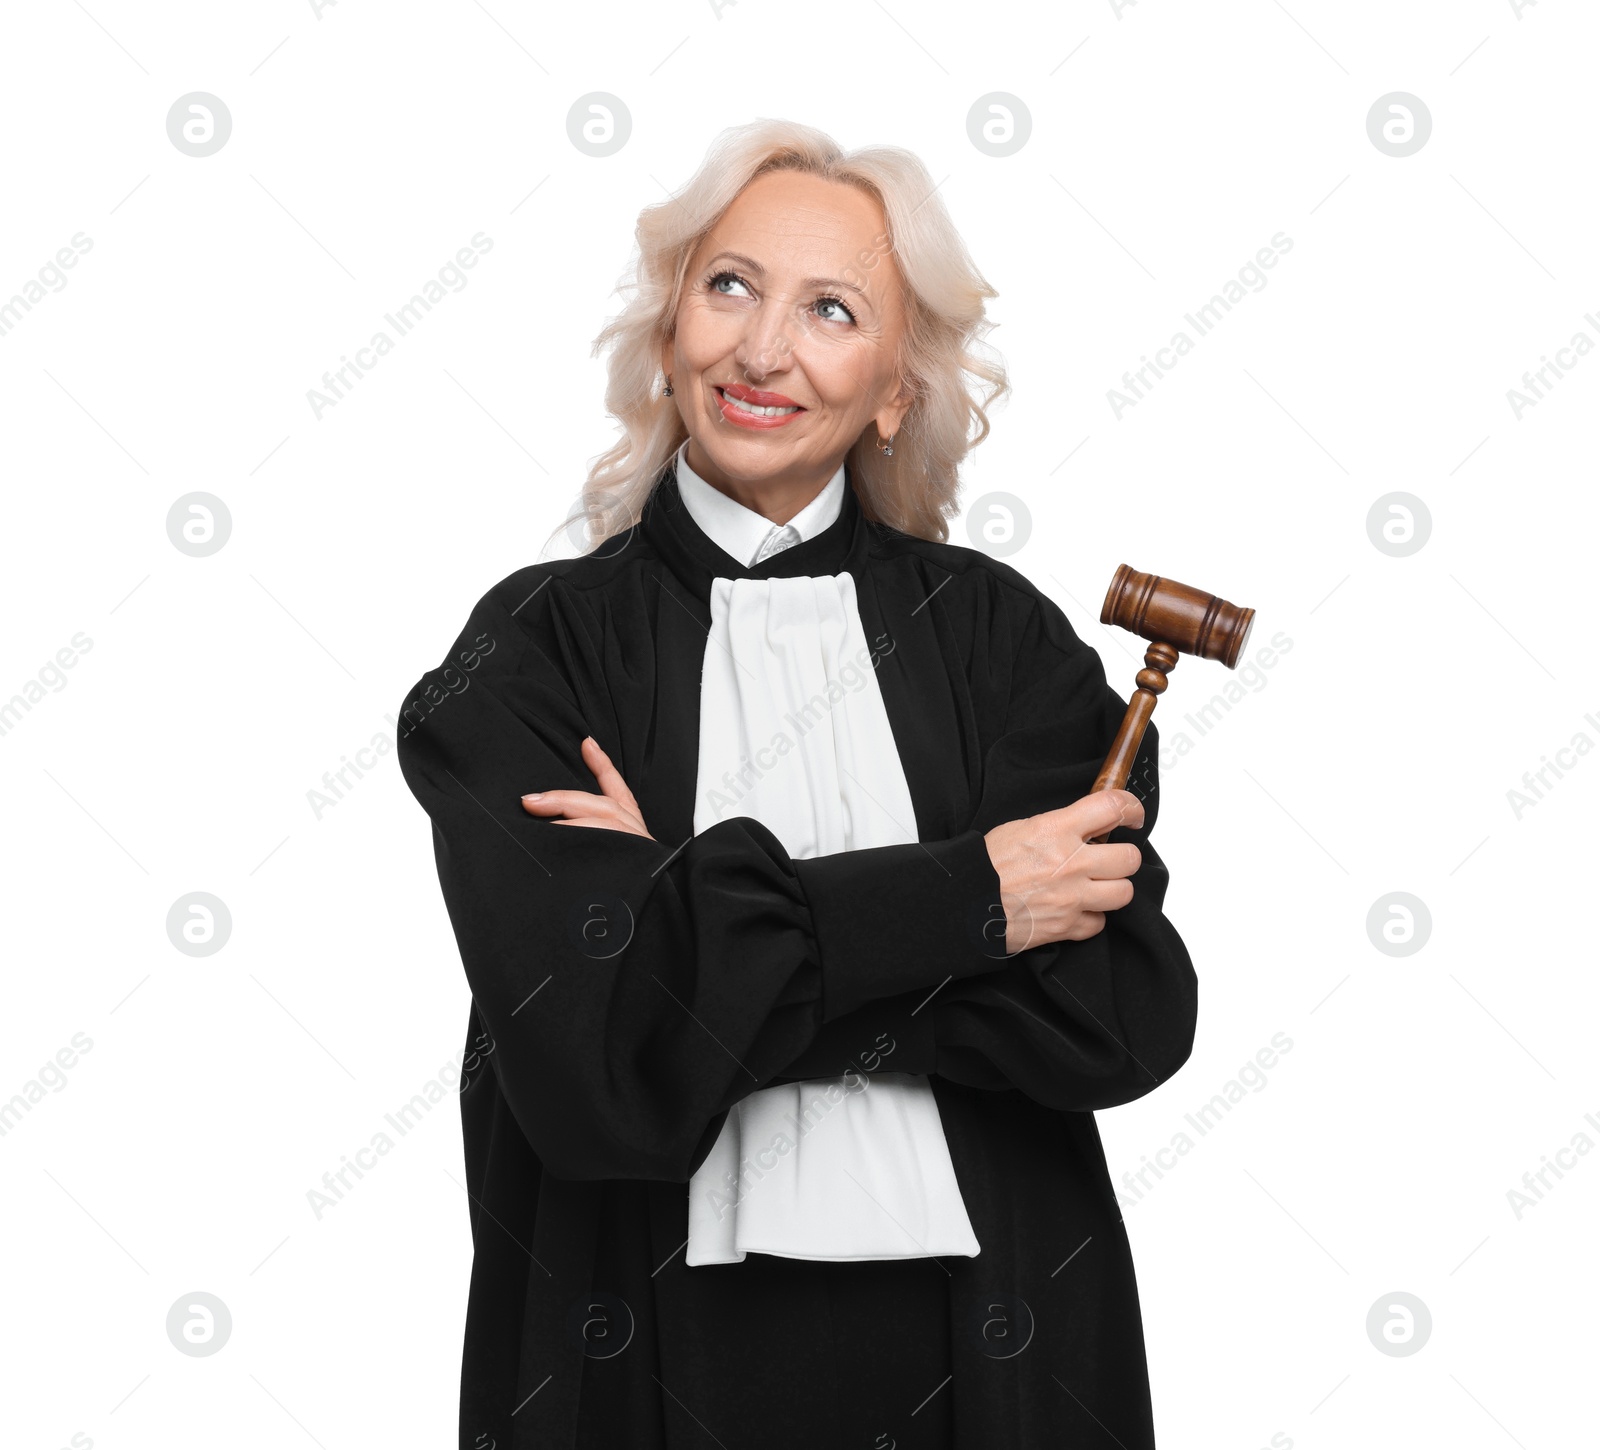 Photo of Smiling senior judge with gavel on white background